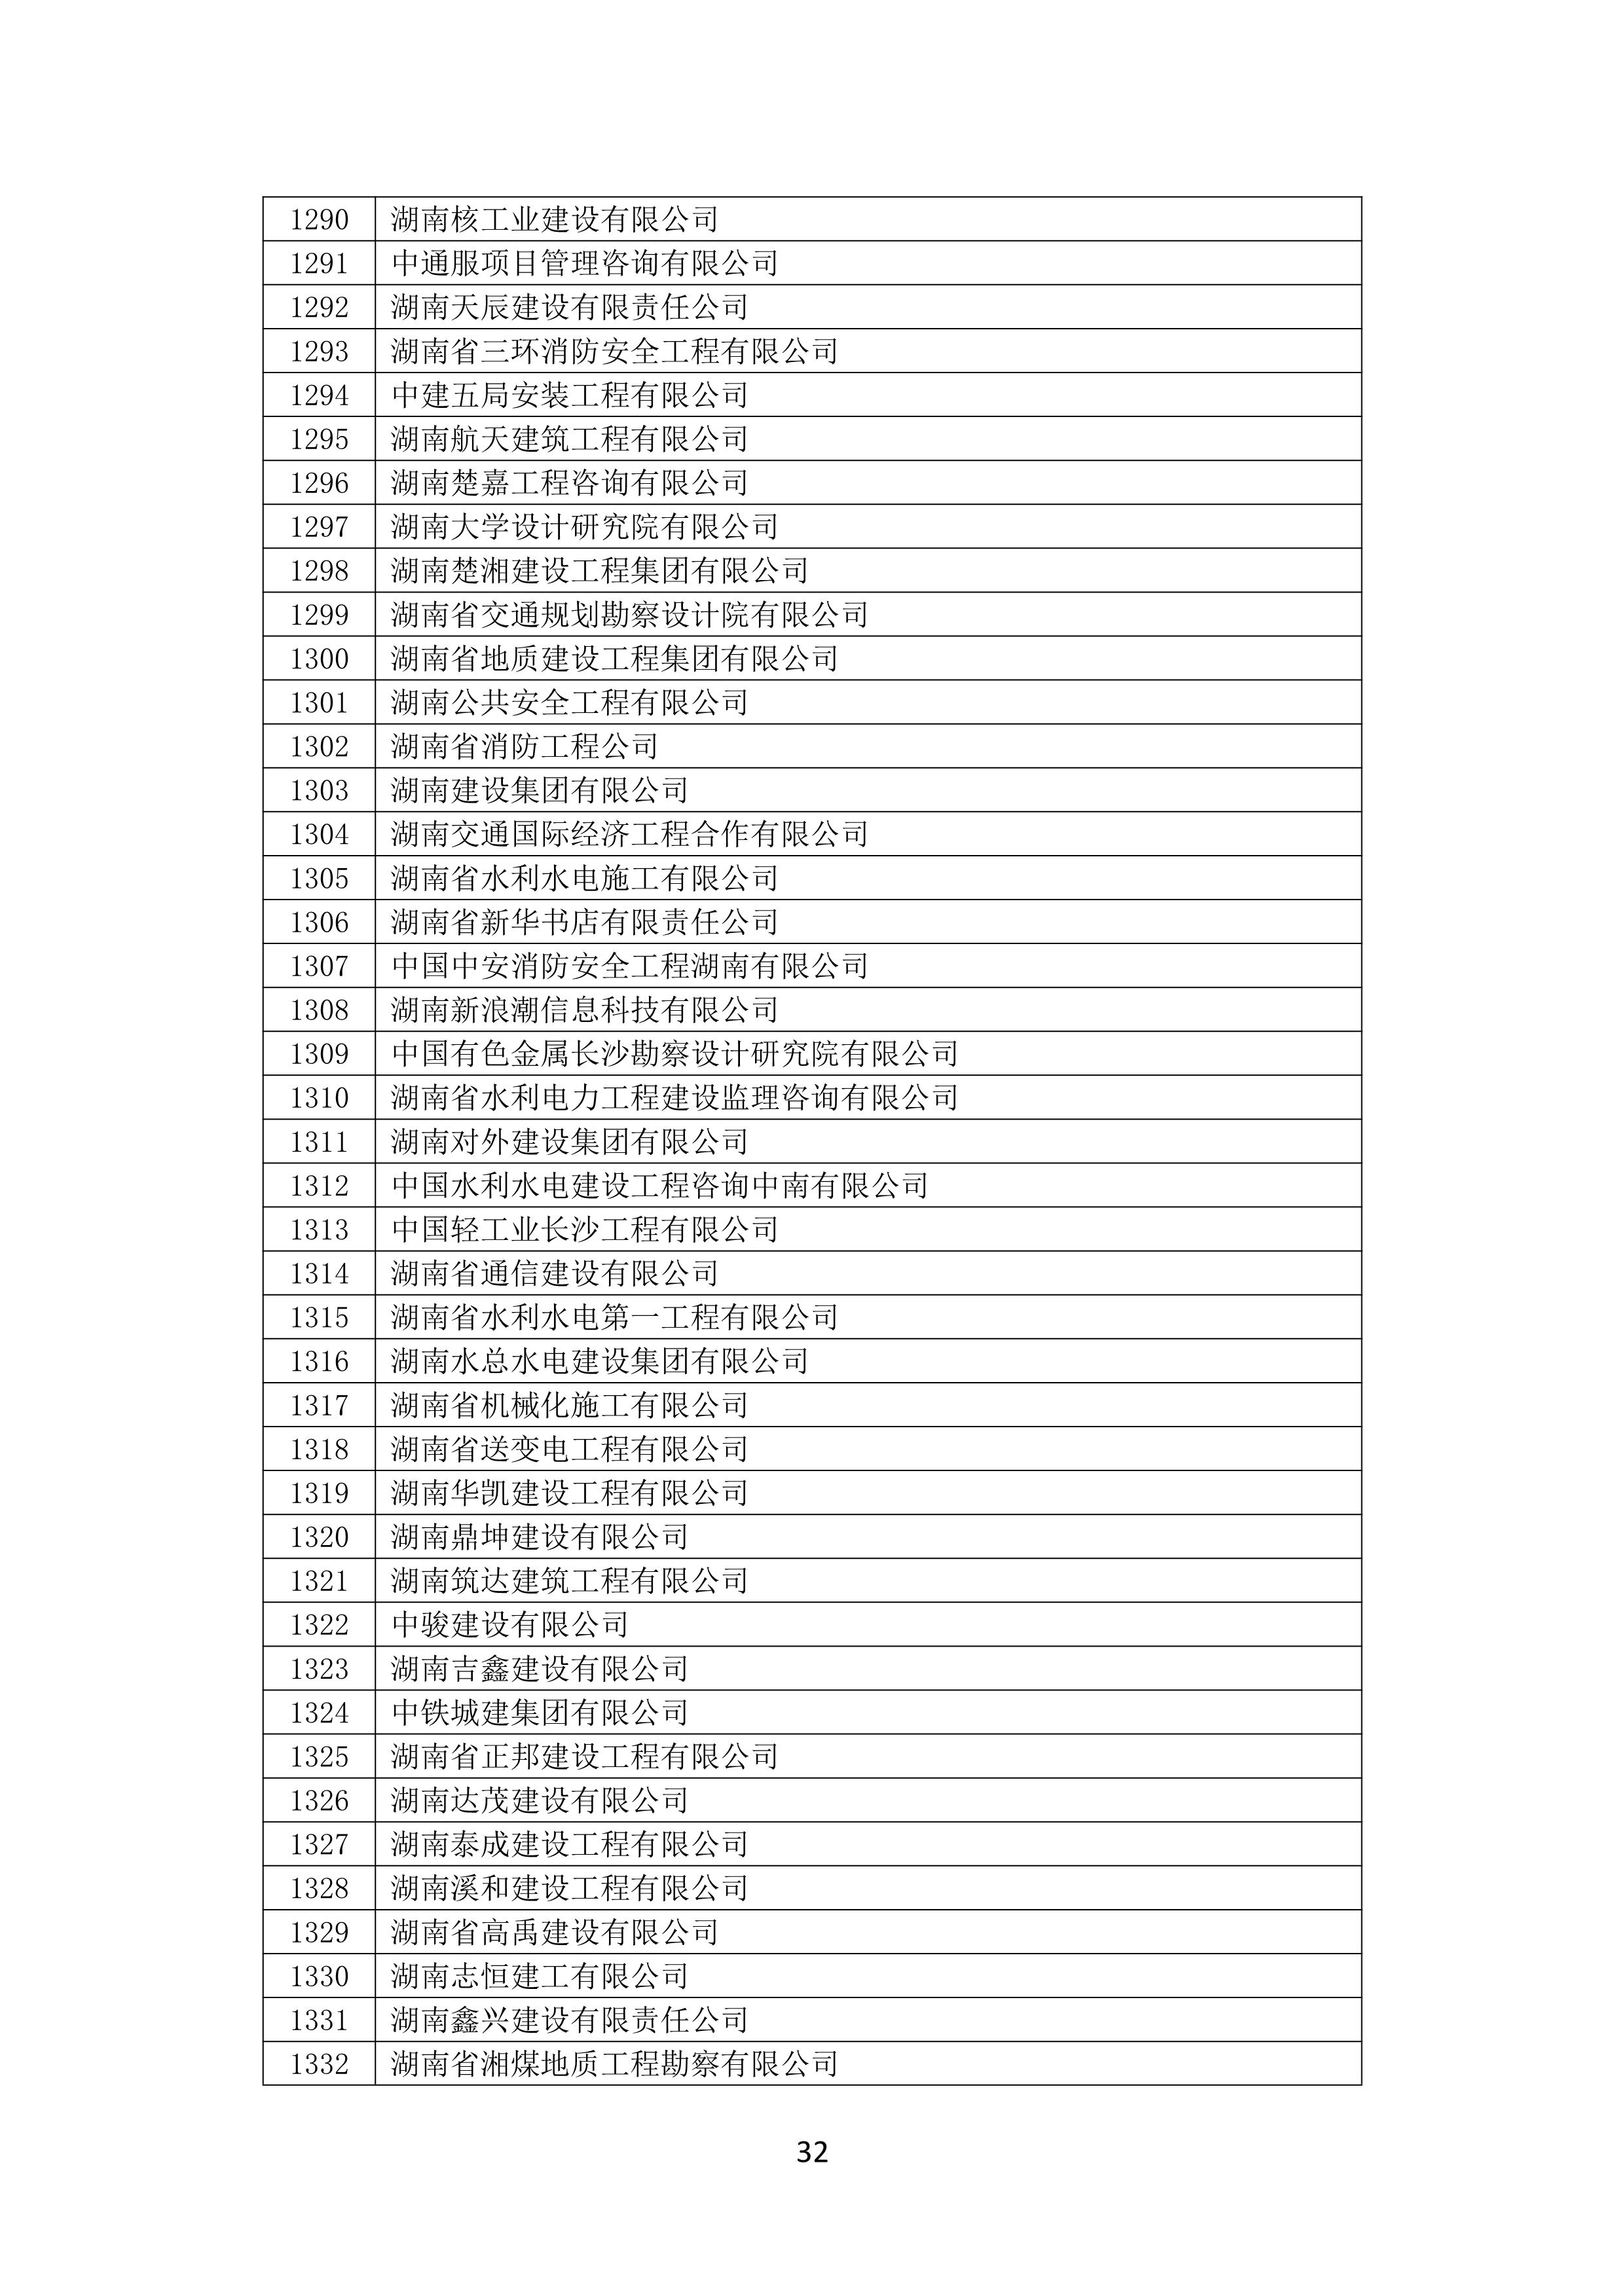 2021 年(nián)度湖南省守合同重信用企業名單_33.png